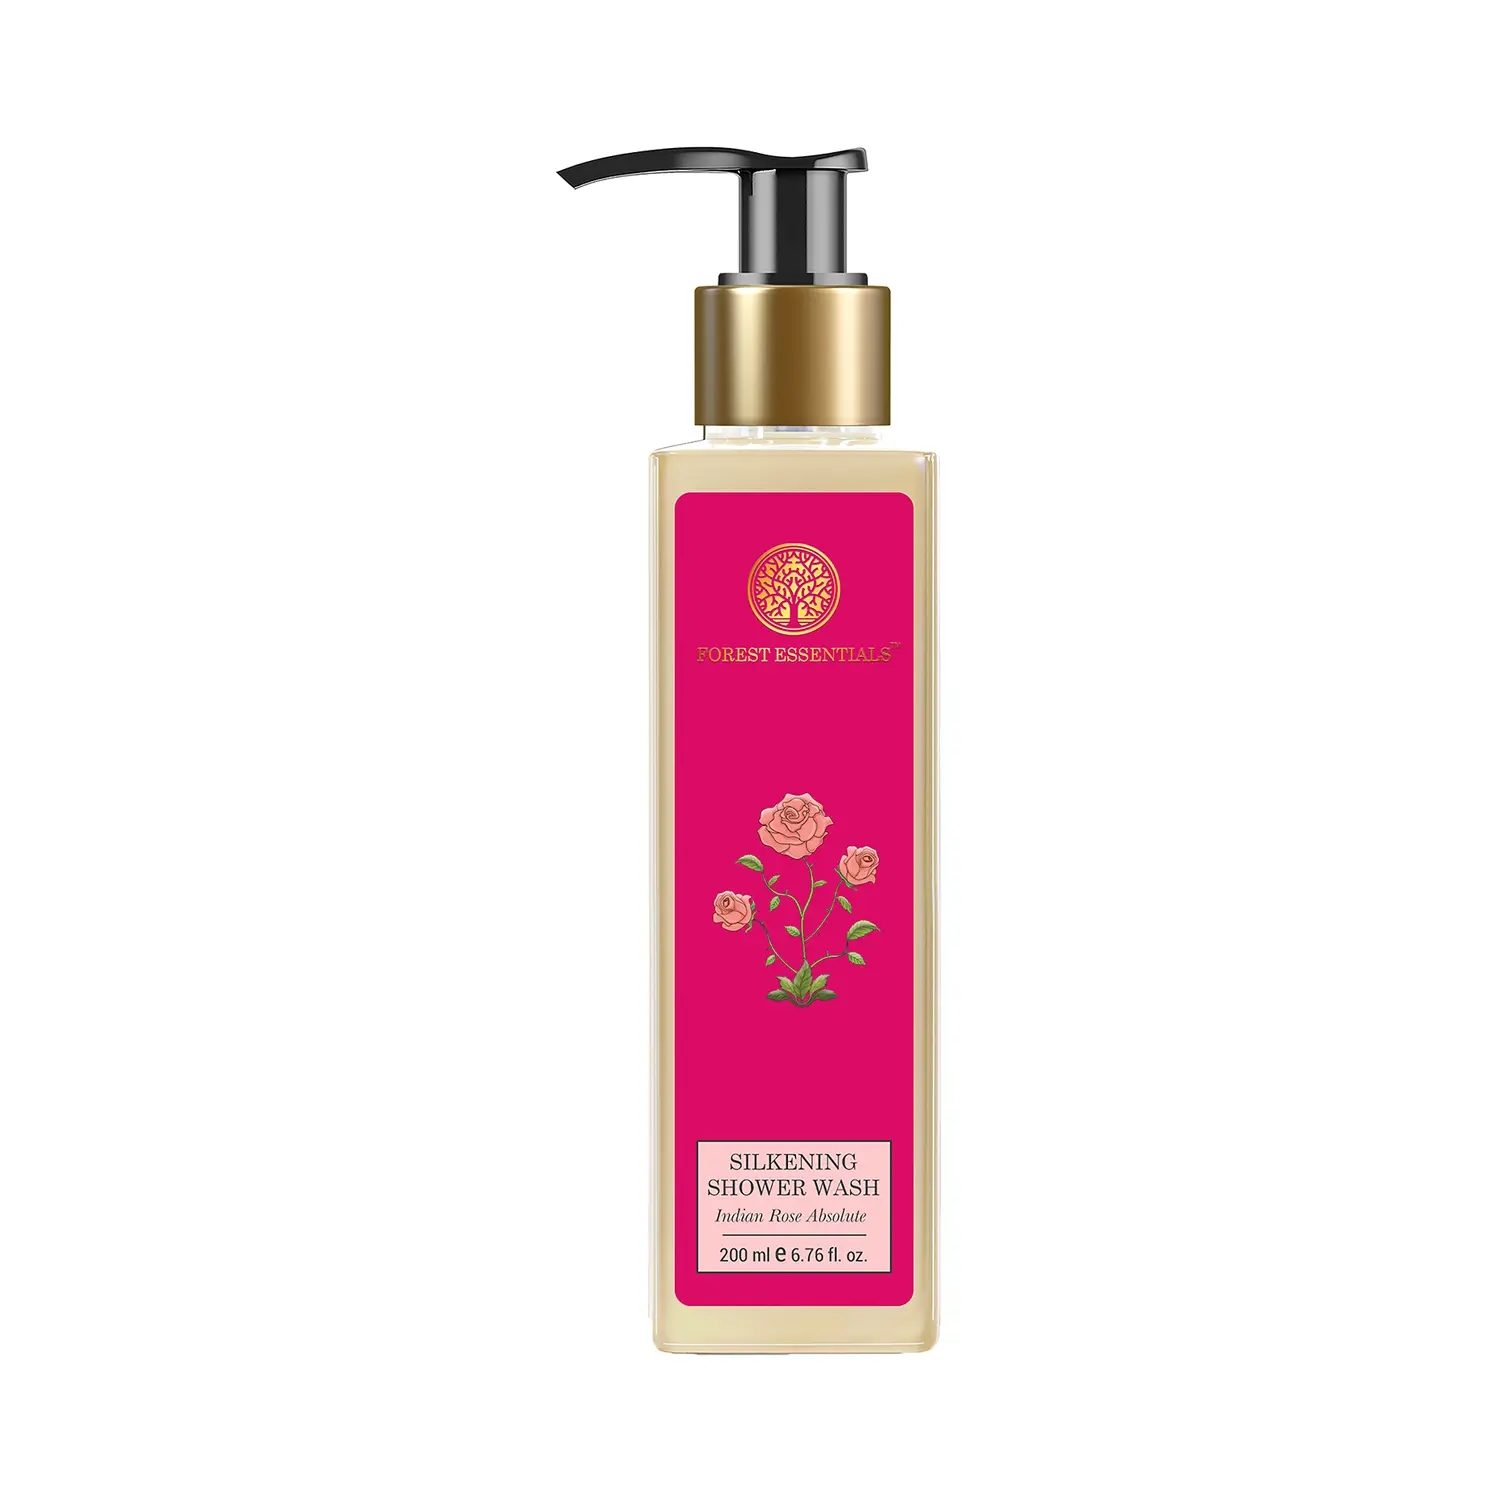 Forest Essentials | Forest Essentials Indian Rose Absolute Silkening Shower Wash (200ml)